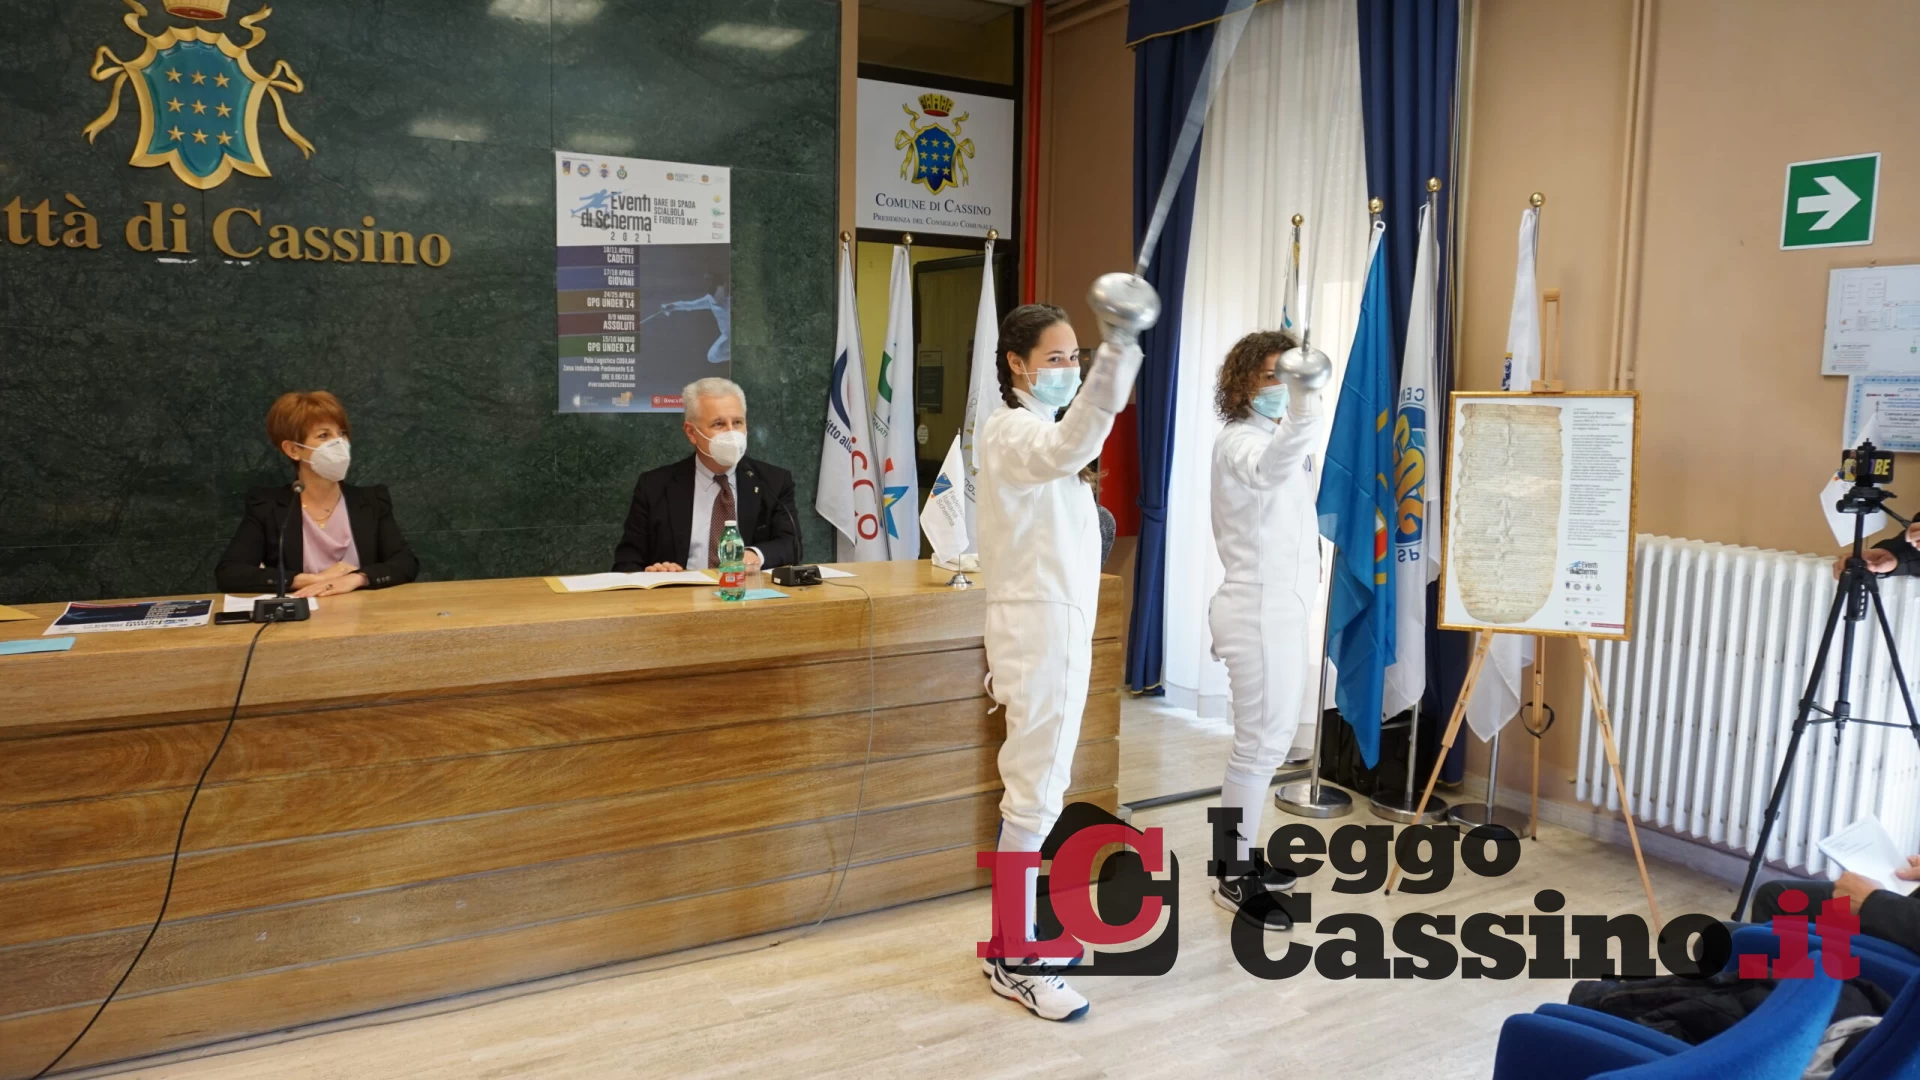 Scherma, a maggio i campionati italiani assoluti si terranno a Cassino